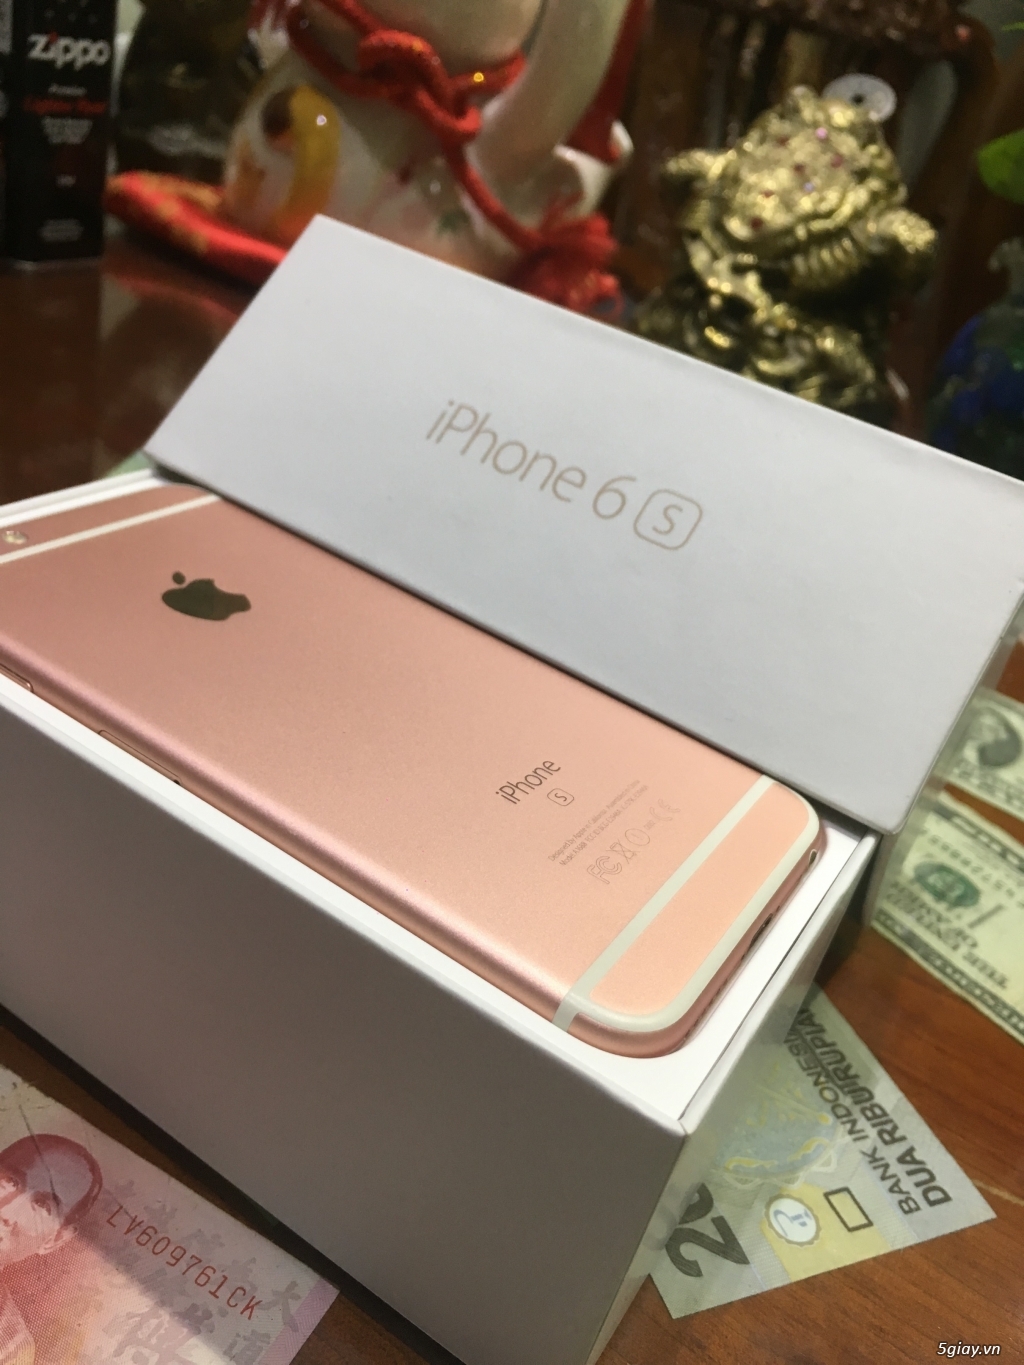 Bán iPhone 6S 64G Hồng Máy Quốc Tế Đẹp Full Box Zin All - 3